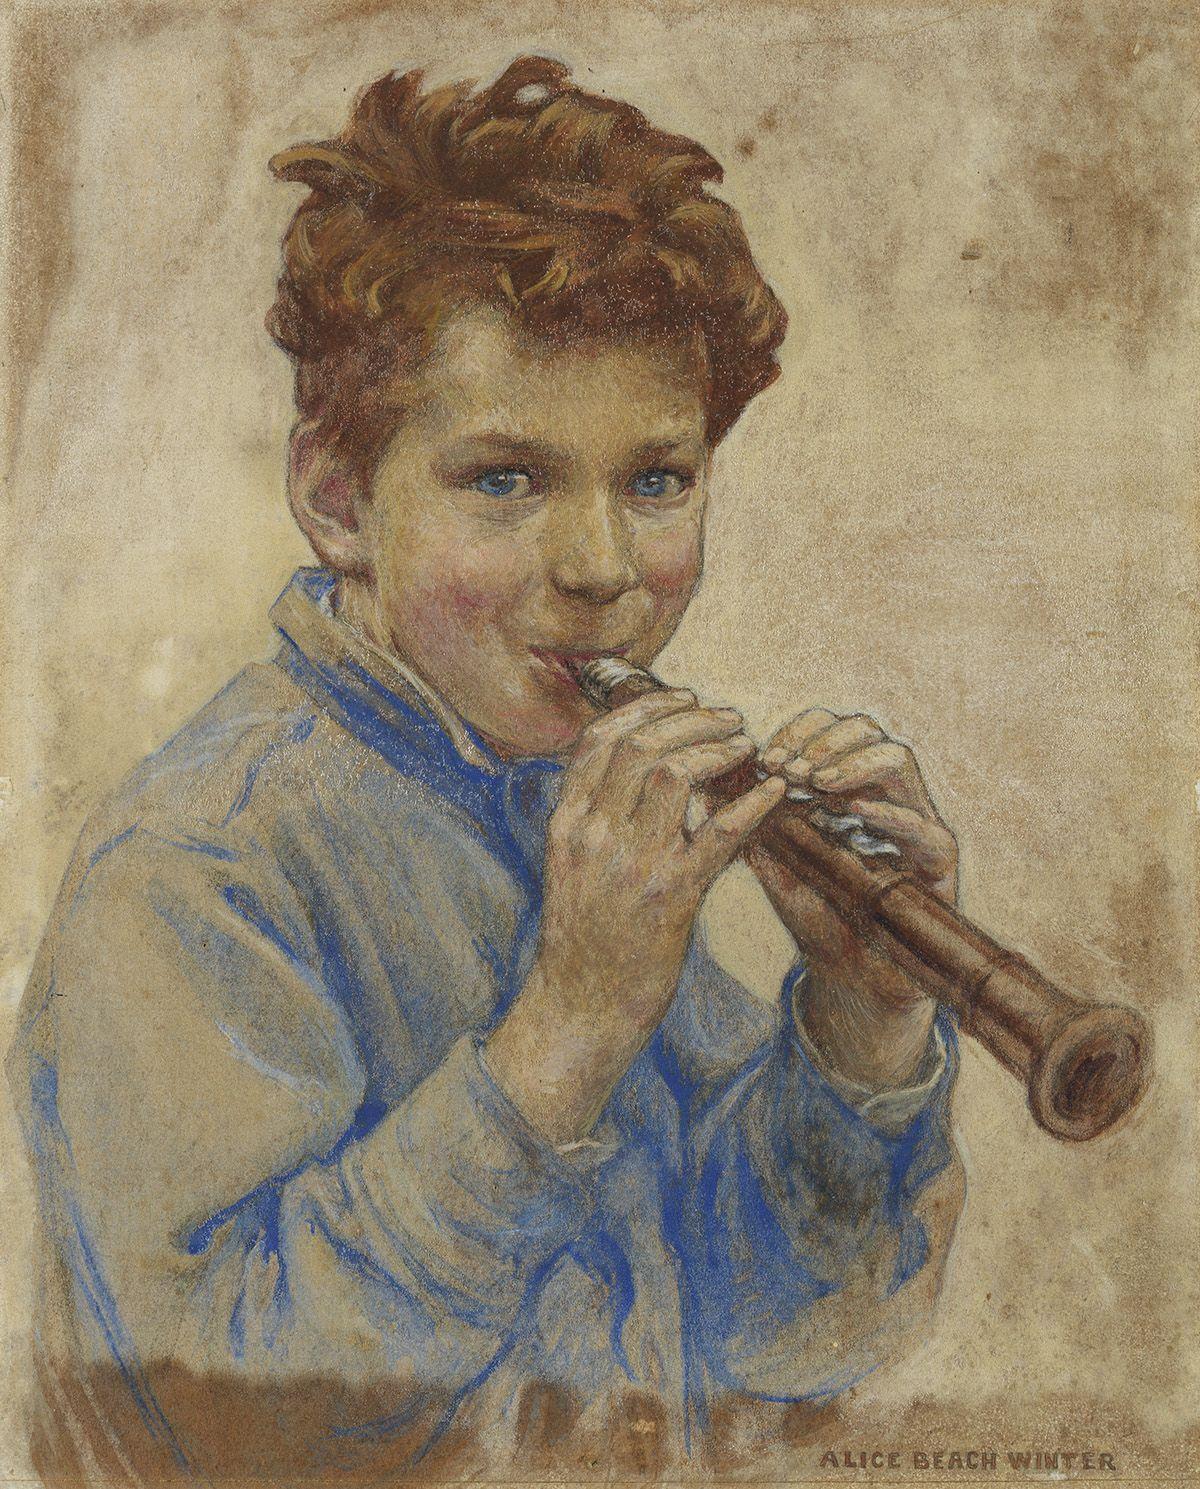 Alice Beach Winter Figurative Art – Boy with Clarinet, Titelseite des Magazins für Kinder, 1927